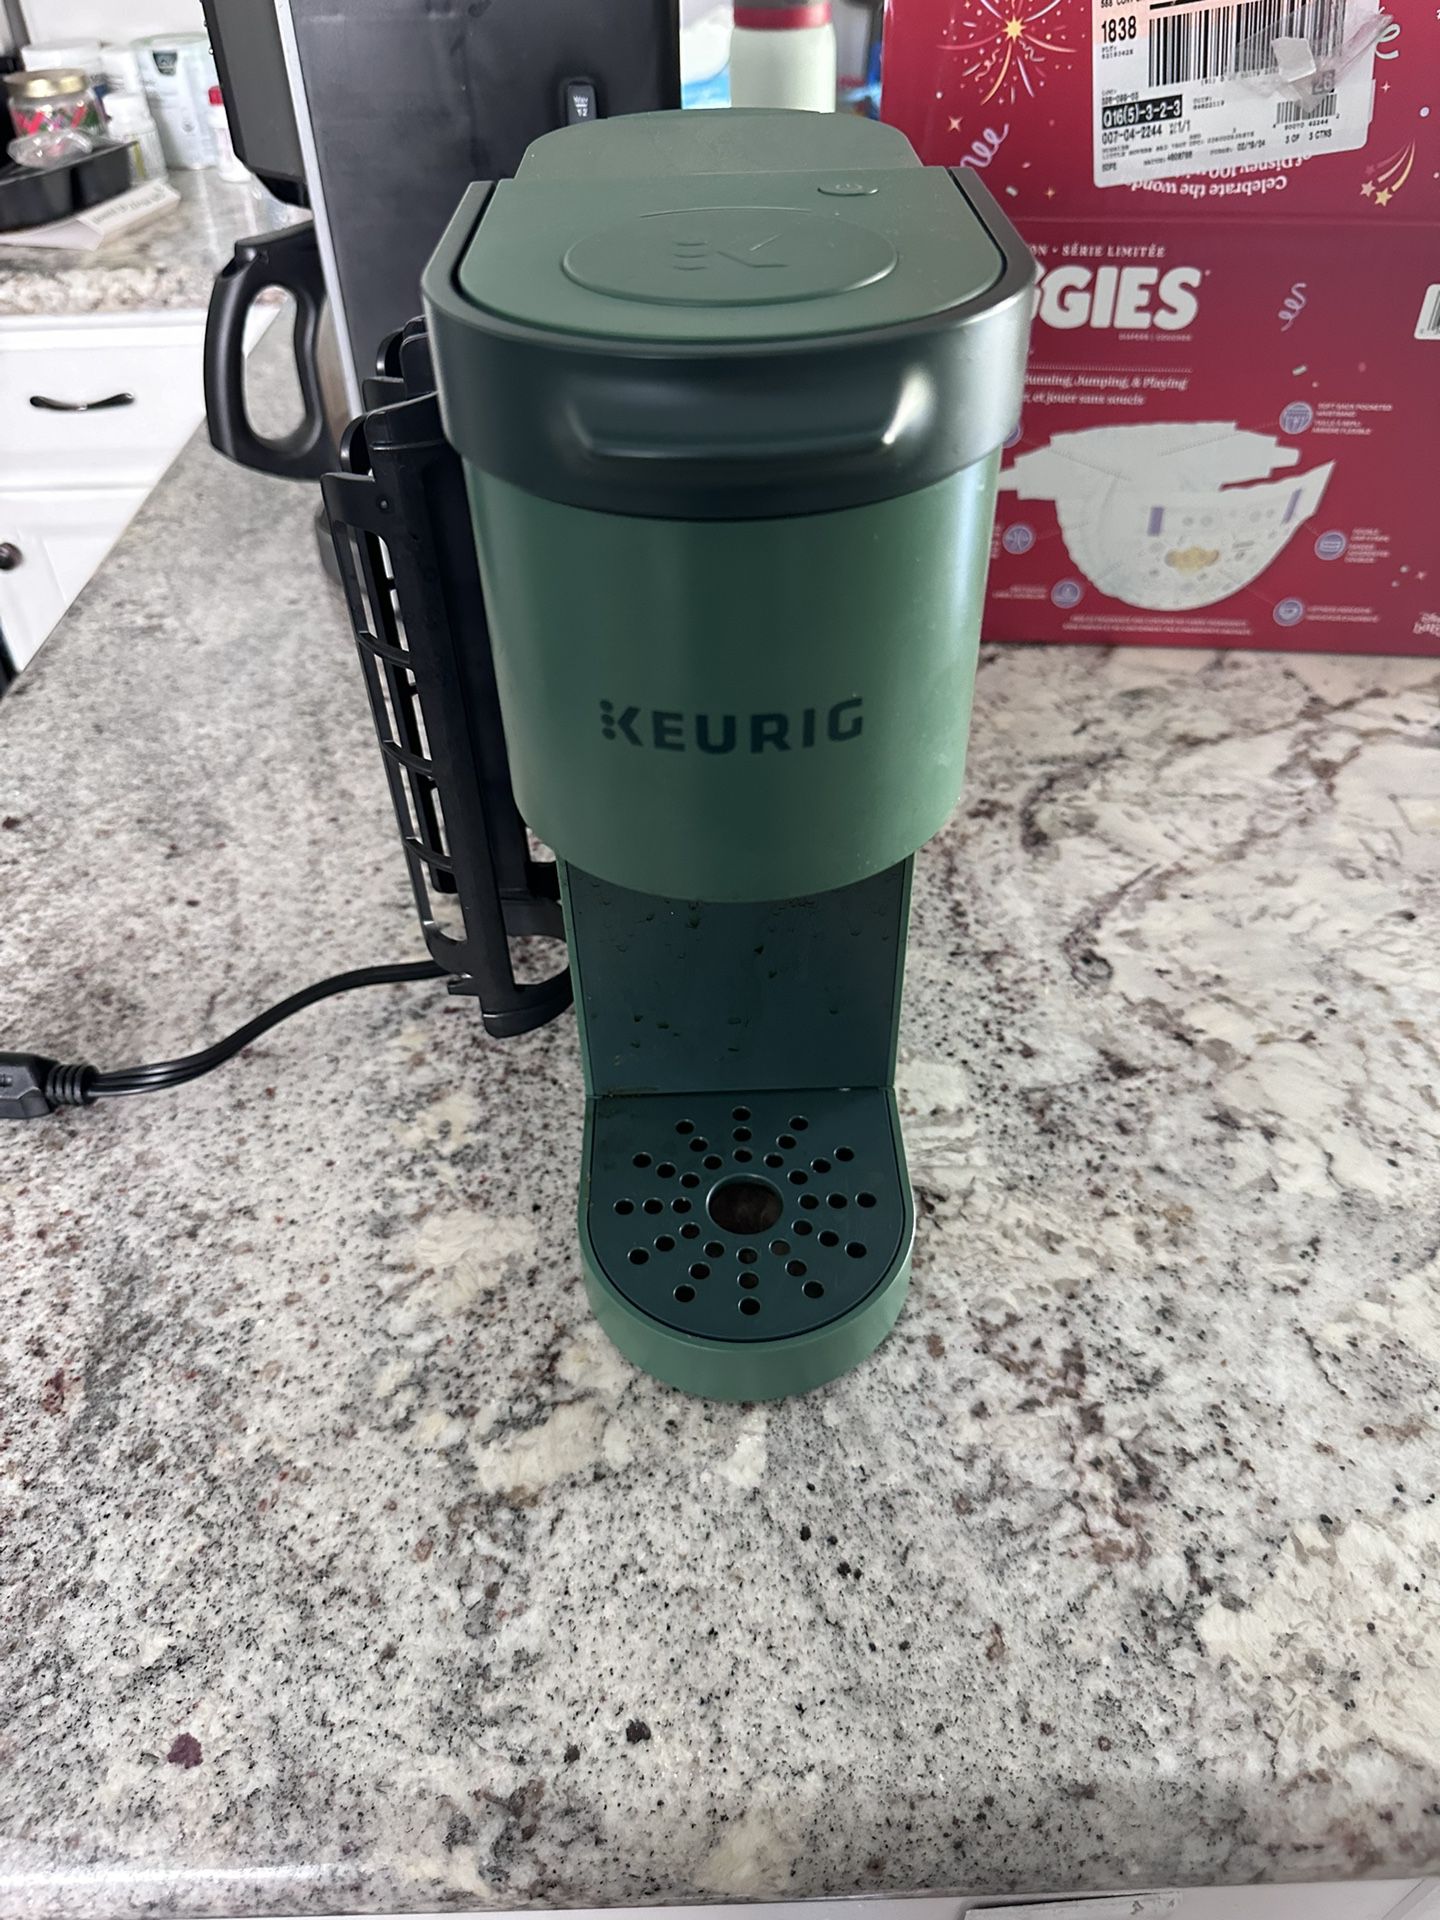 Keurig Coffee Maker (Green)